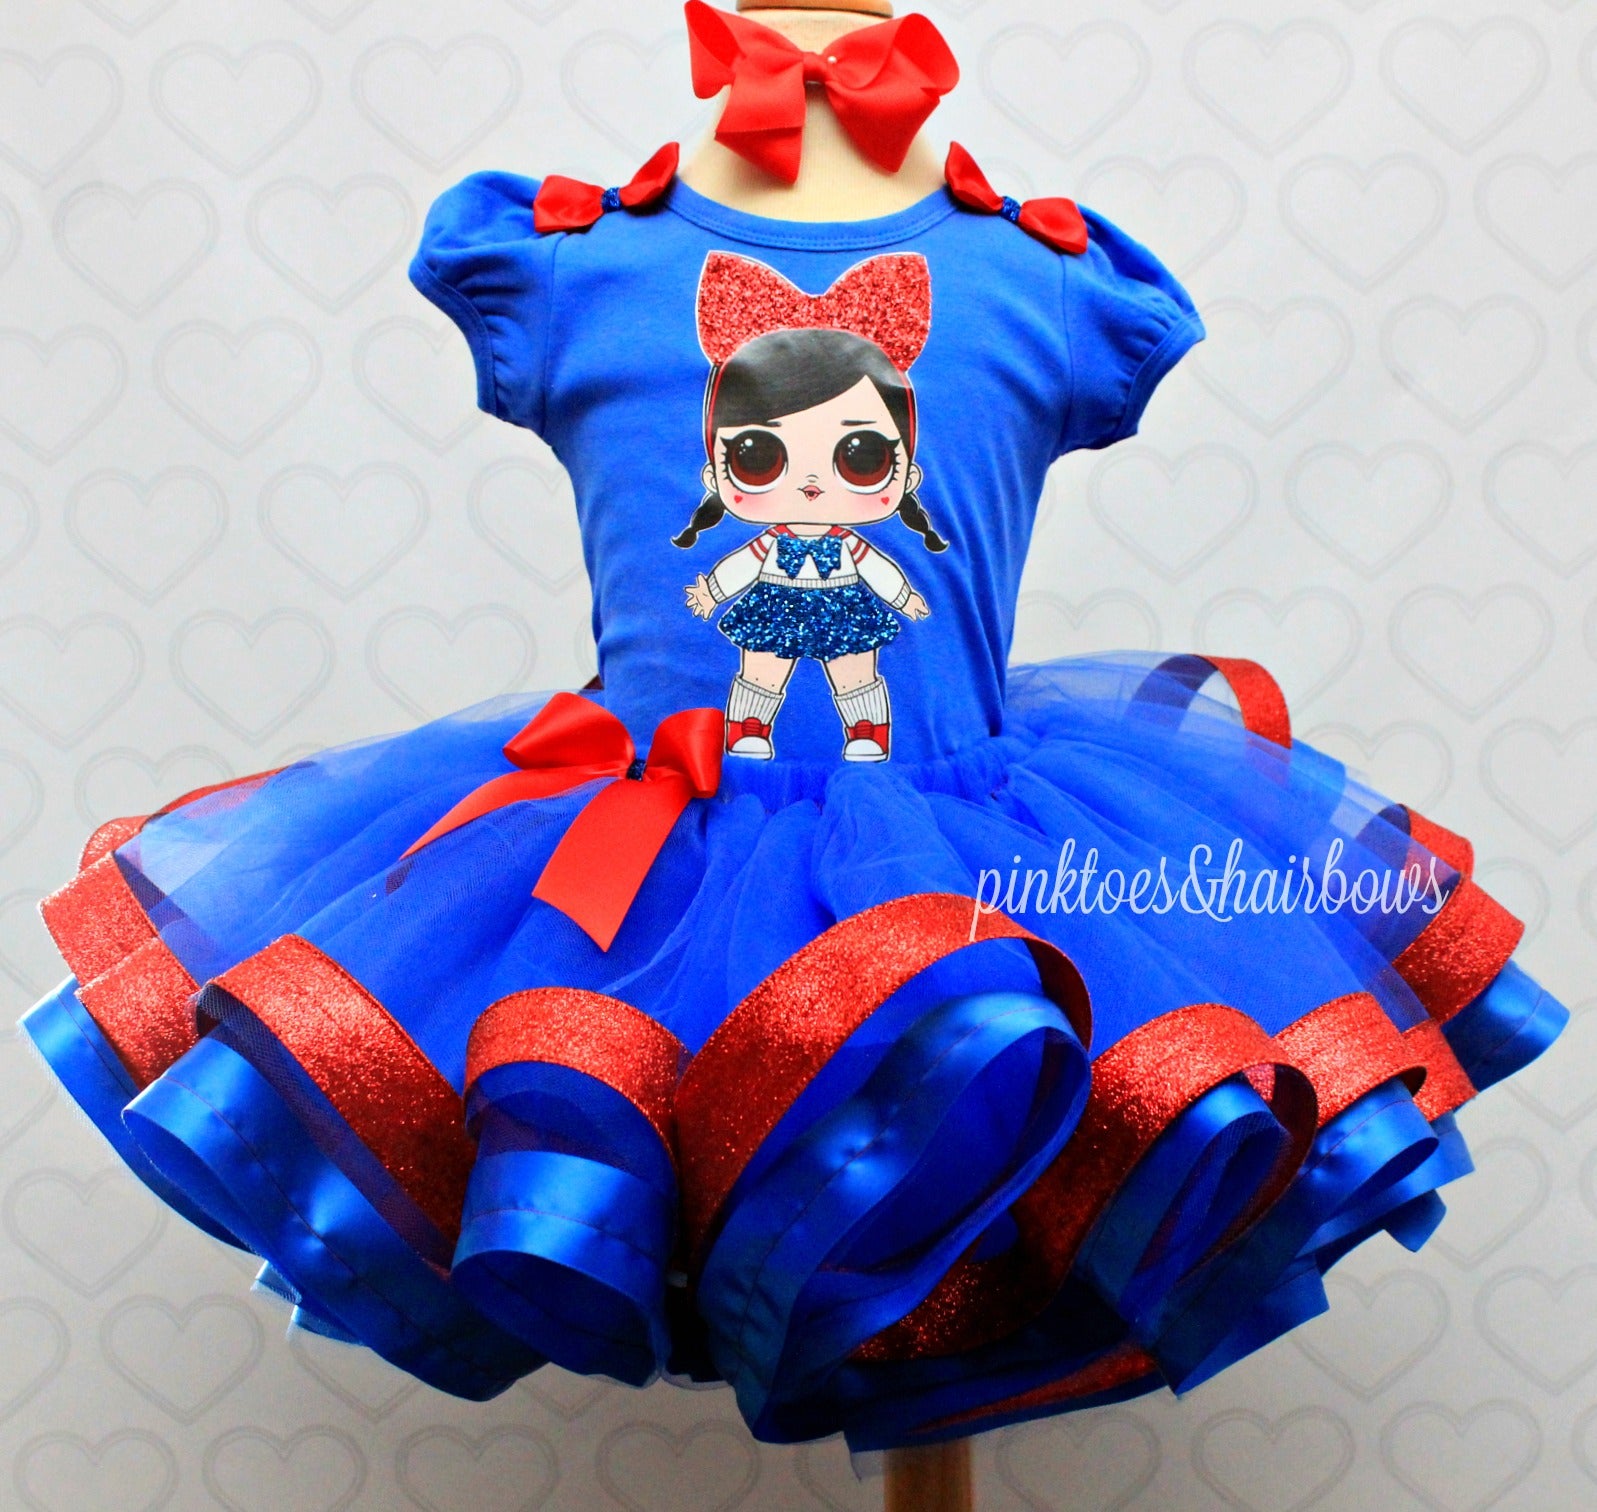 Fanime Lol surprise doll tutu set-lol surprise outfit- lol surprise dress